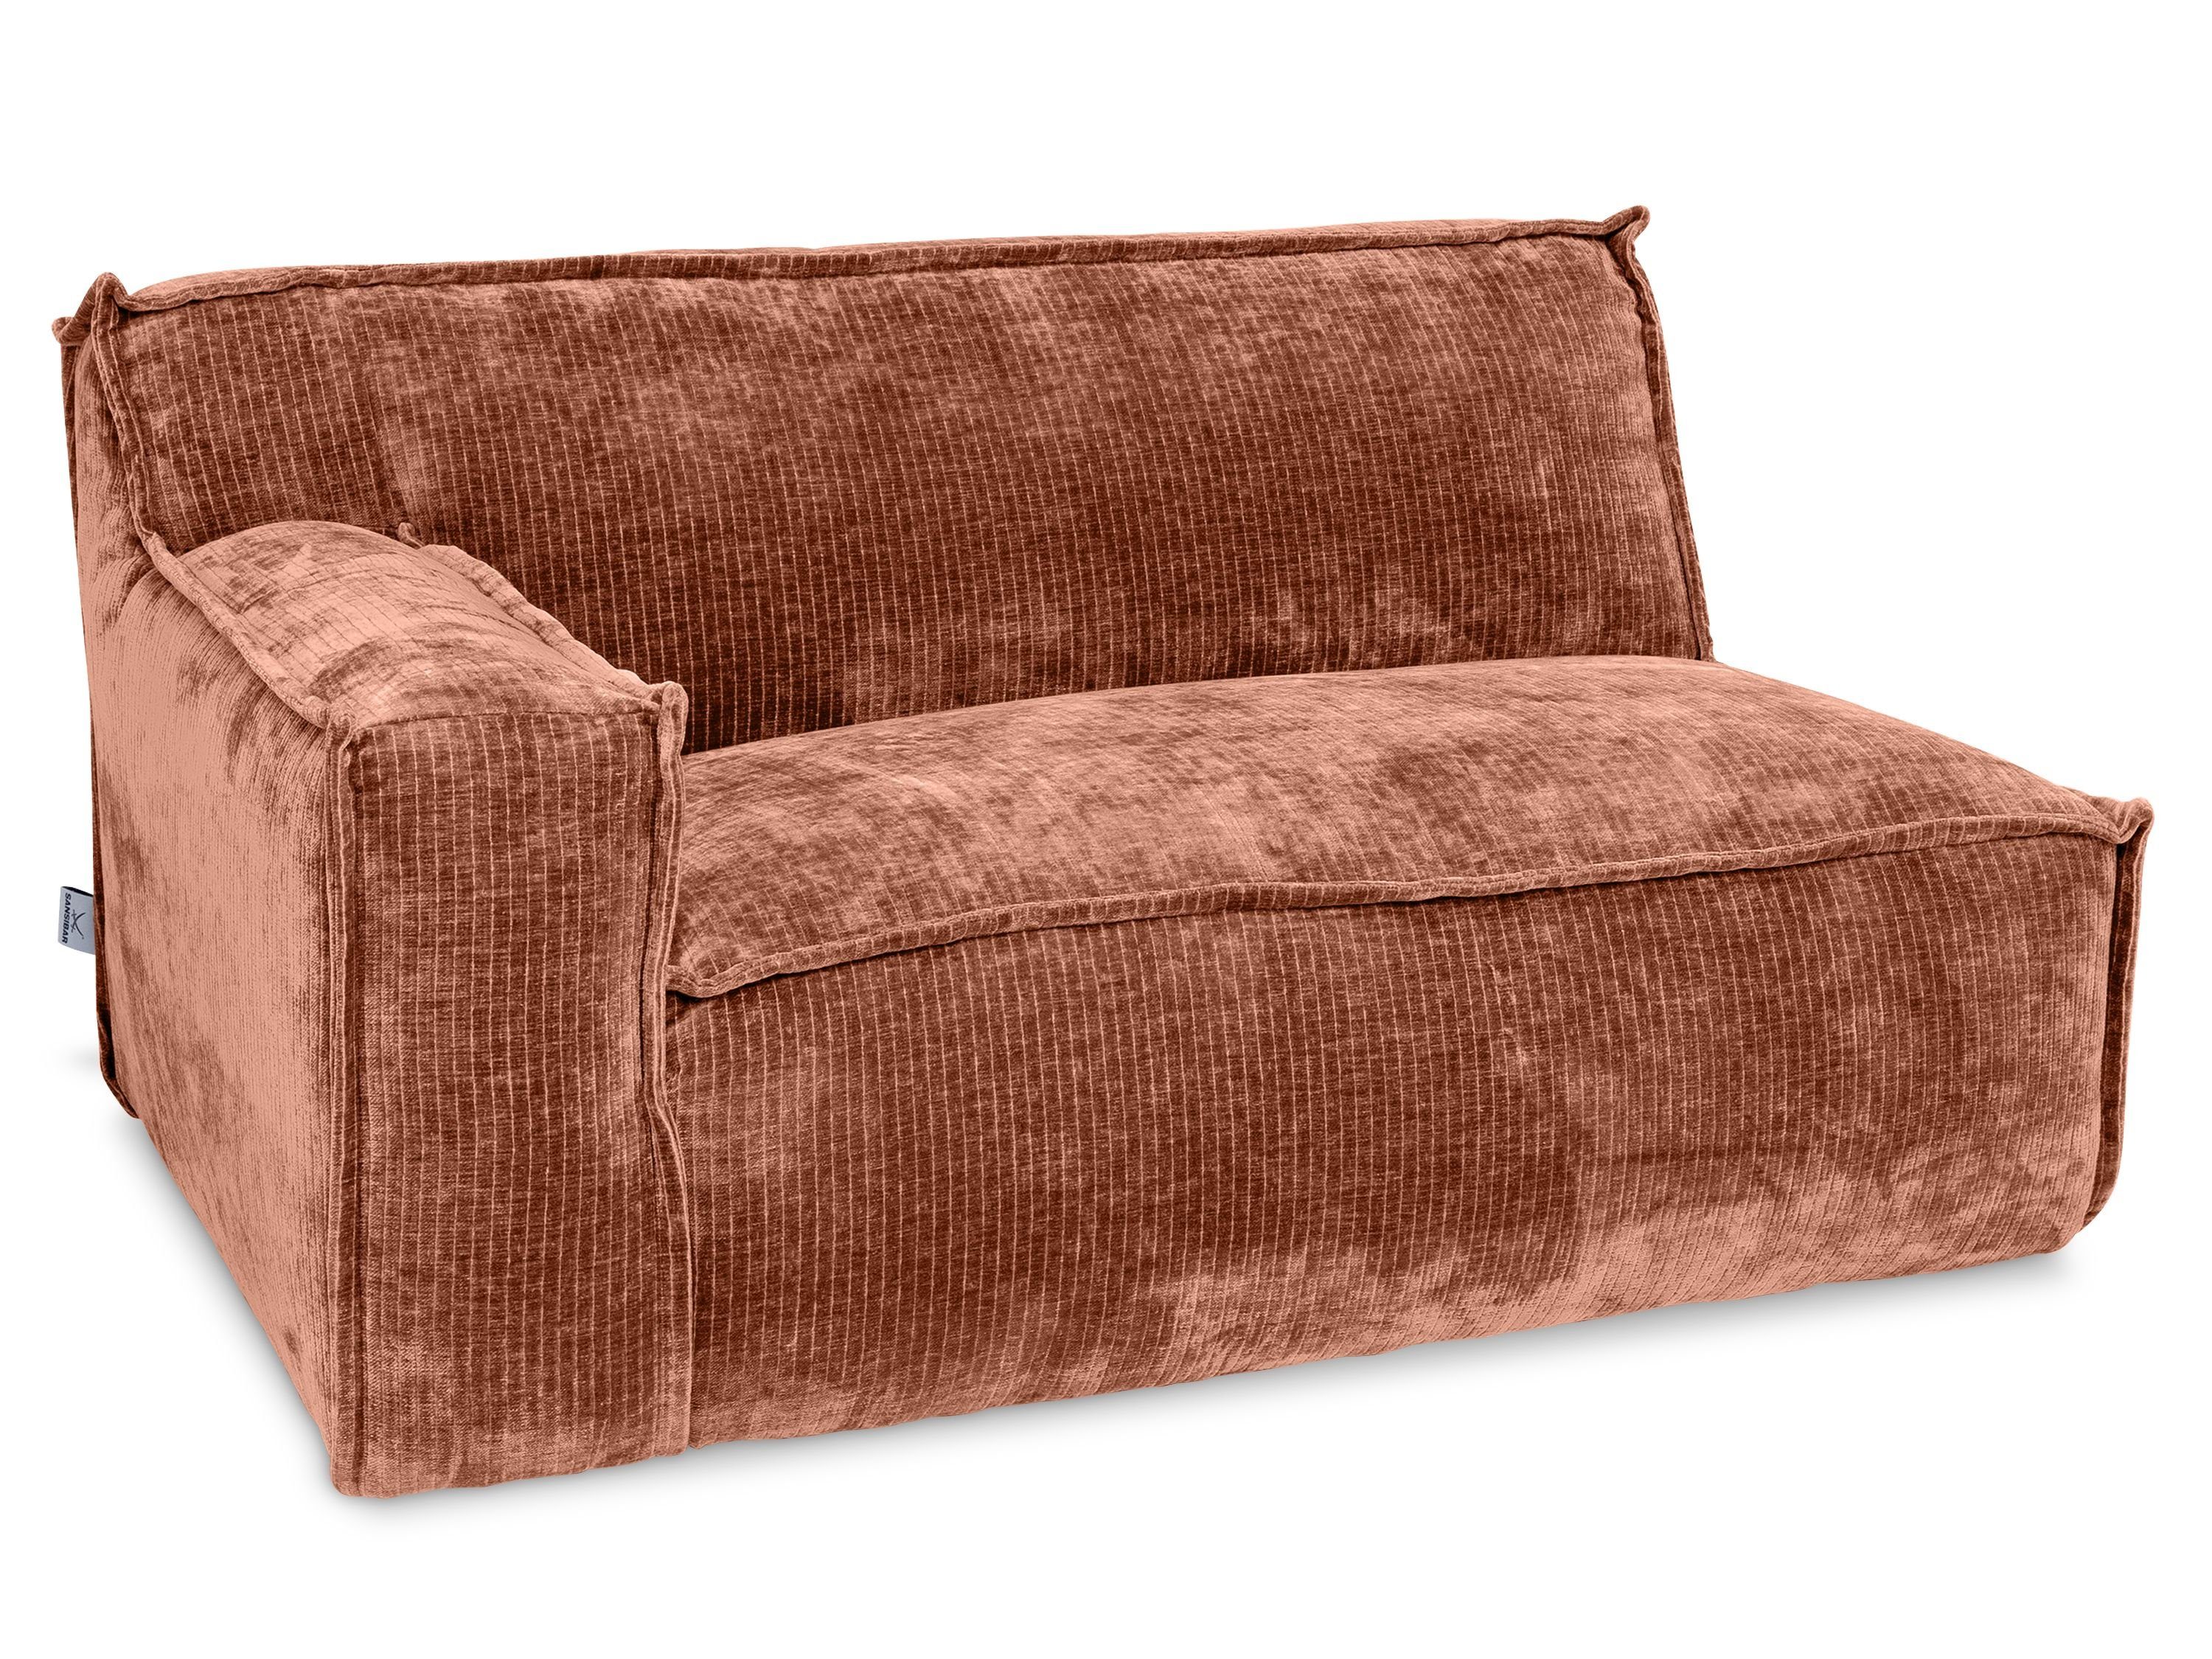 Sitzelement cm SANSIBAR Sofa RANTUM 145x79x110 145x79x110 SANSIBAR (BHT cm) Living Sitzelement, copper BHT